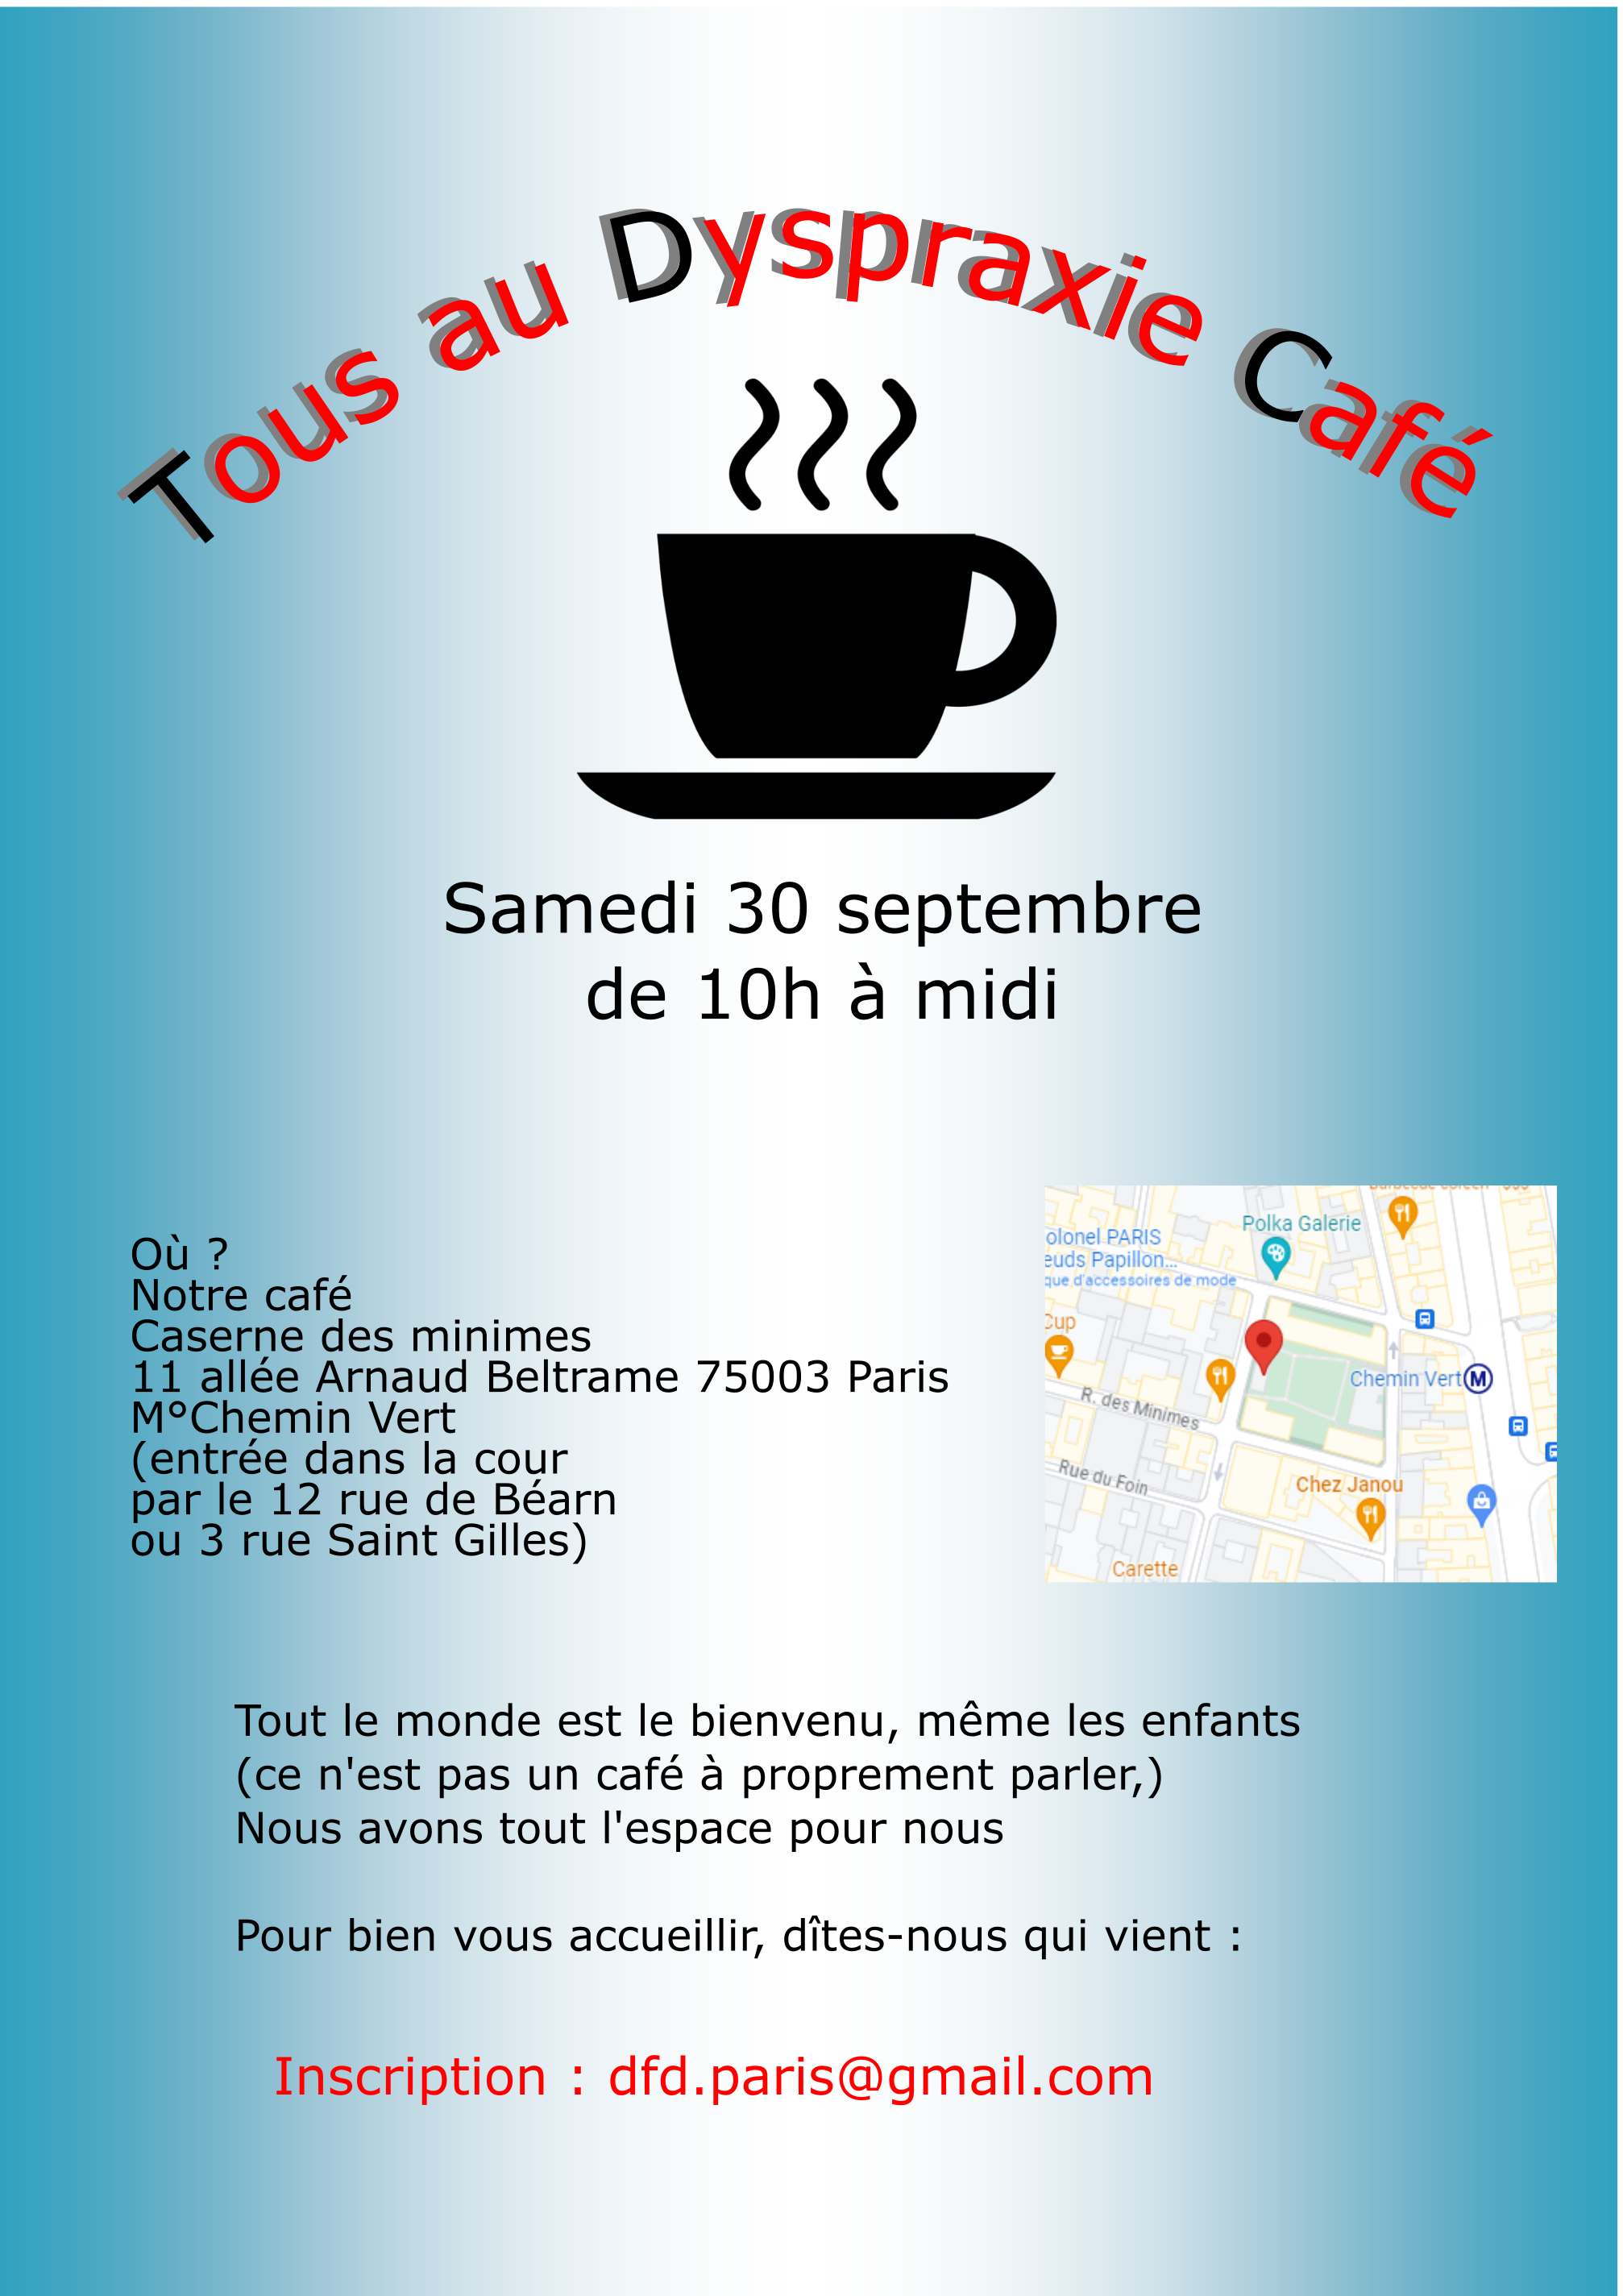 DFD Paris et IDF : Tous au Dyspraxie Café !